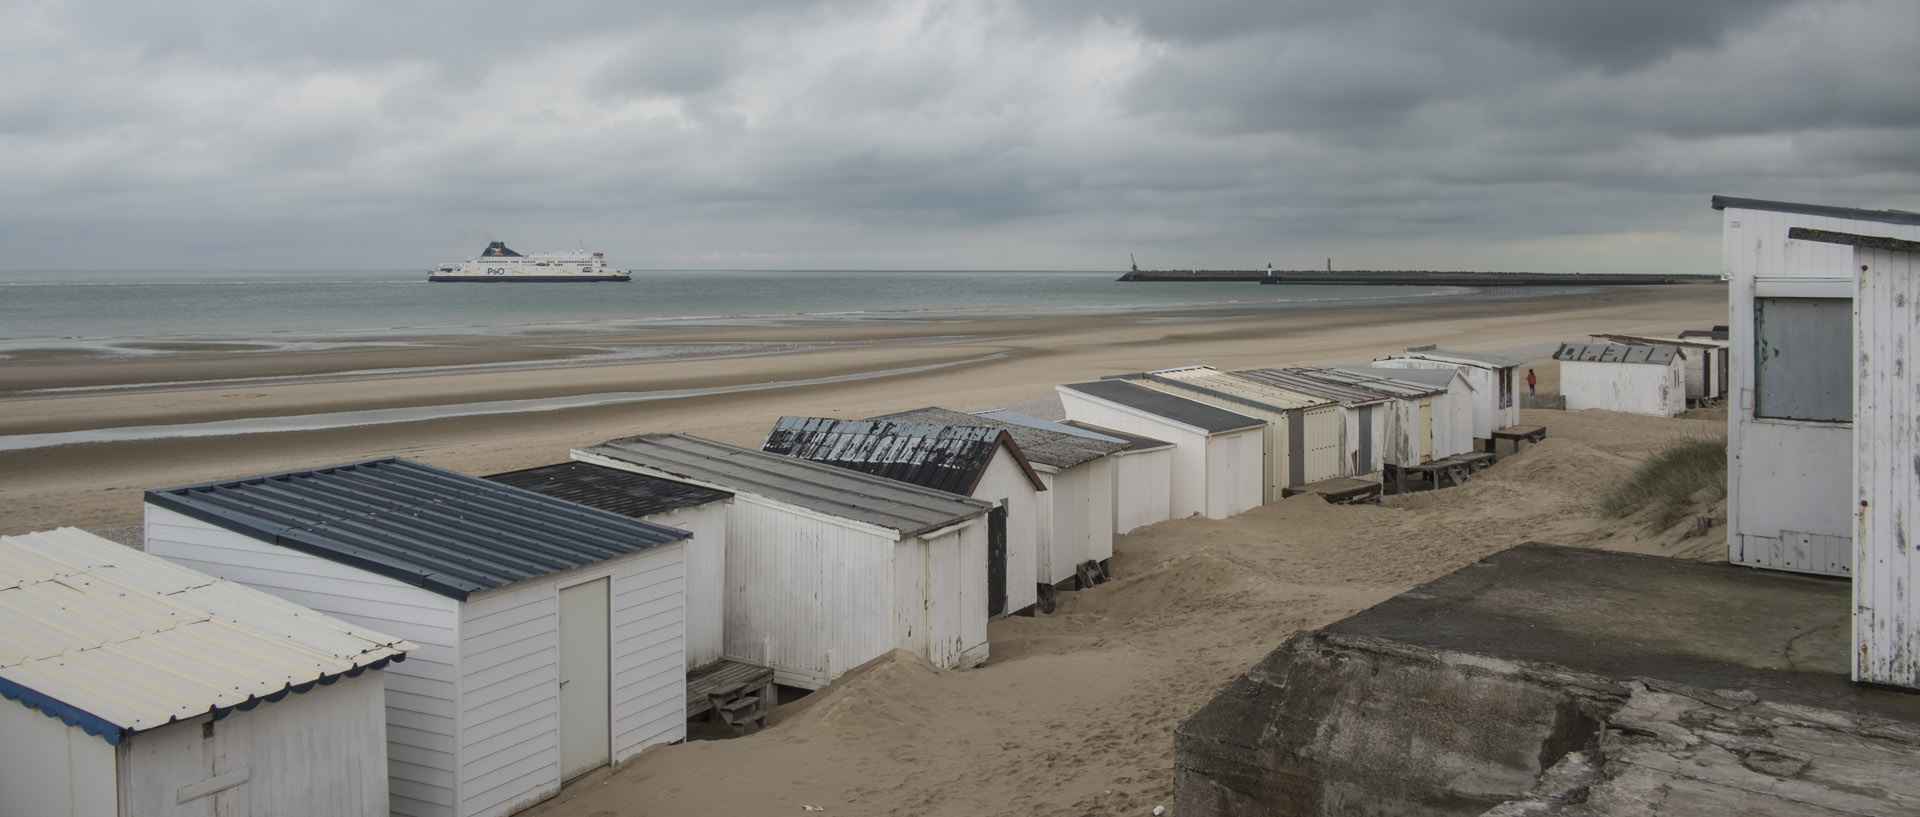 Mercredi 4 novembre 2015, 13:34, plage de Calais